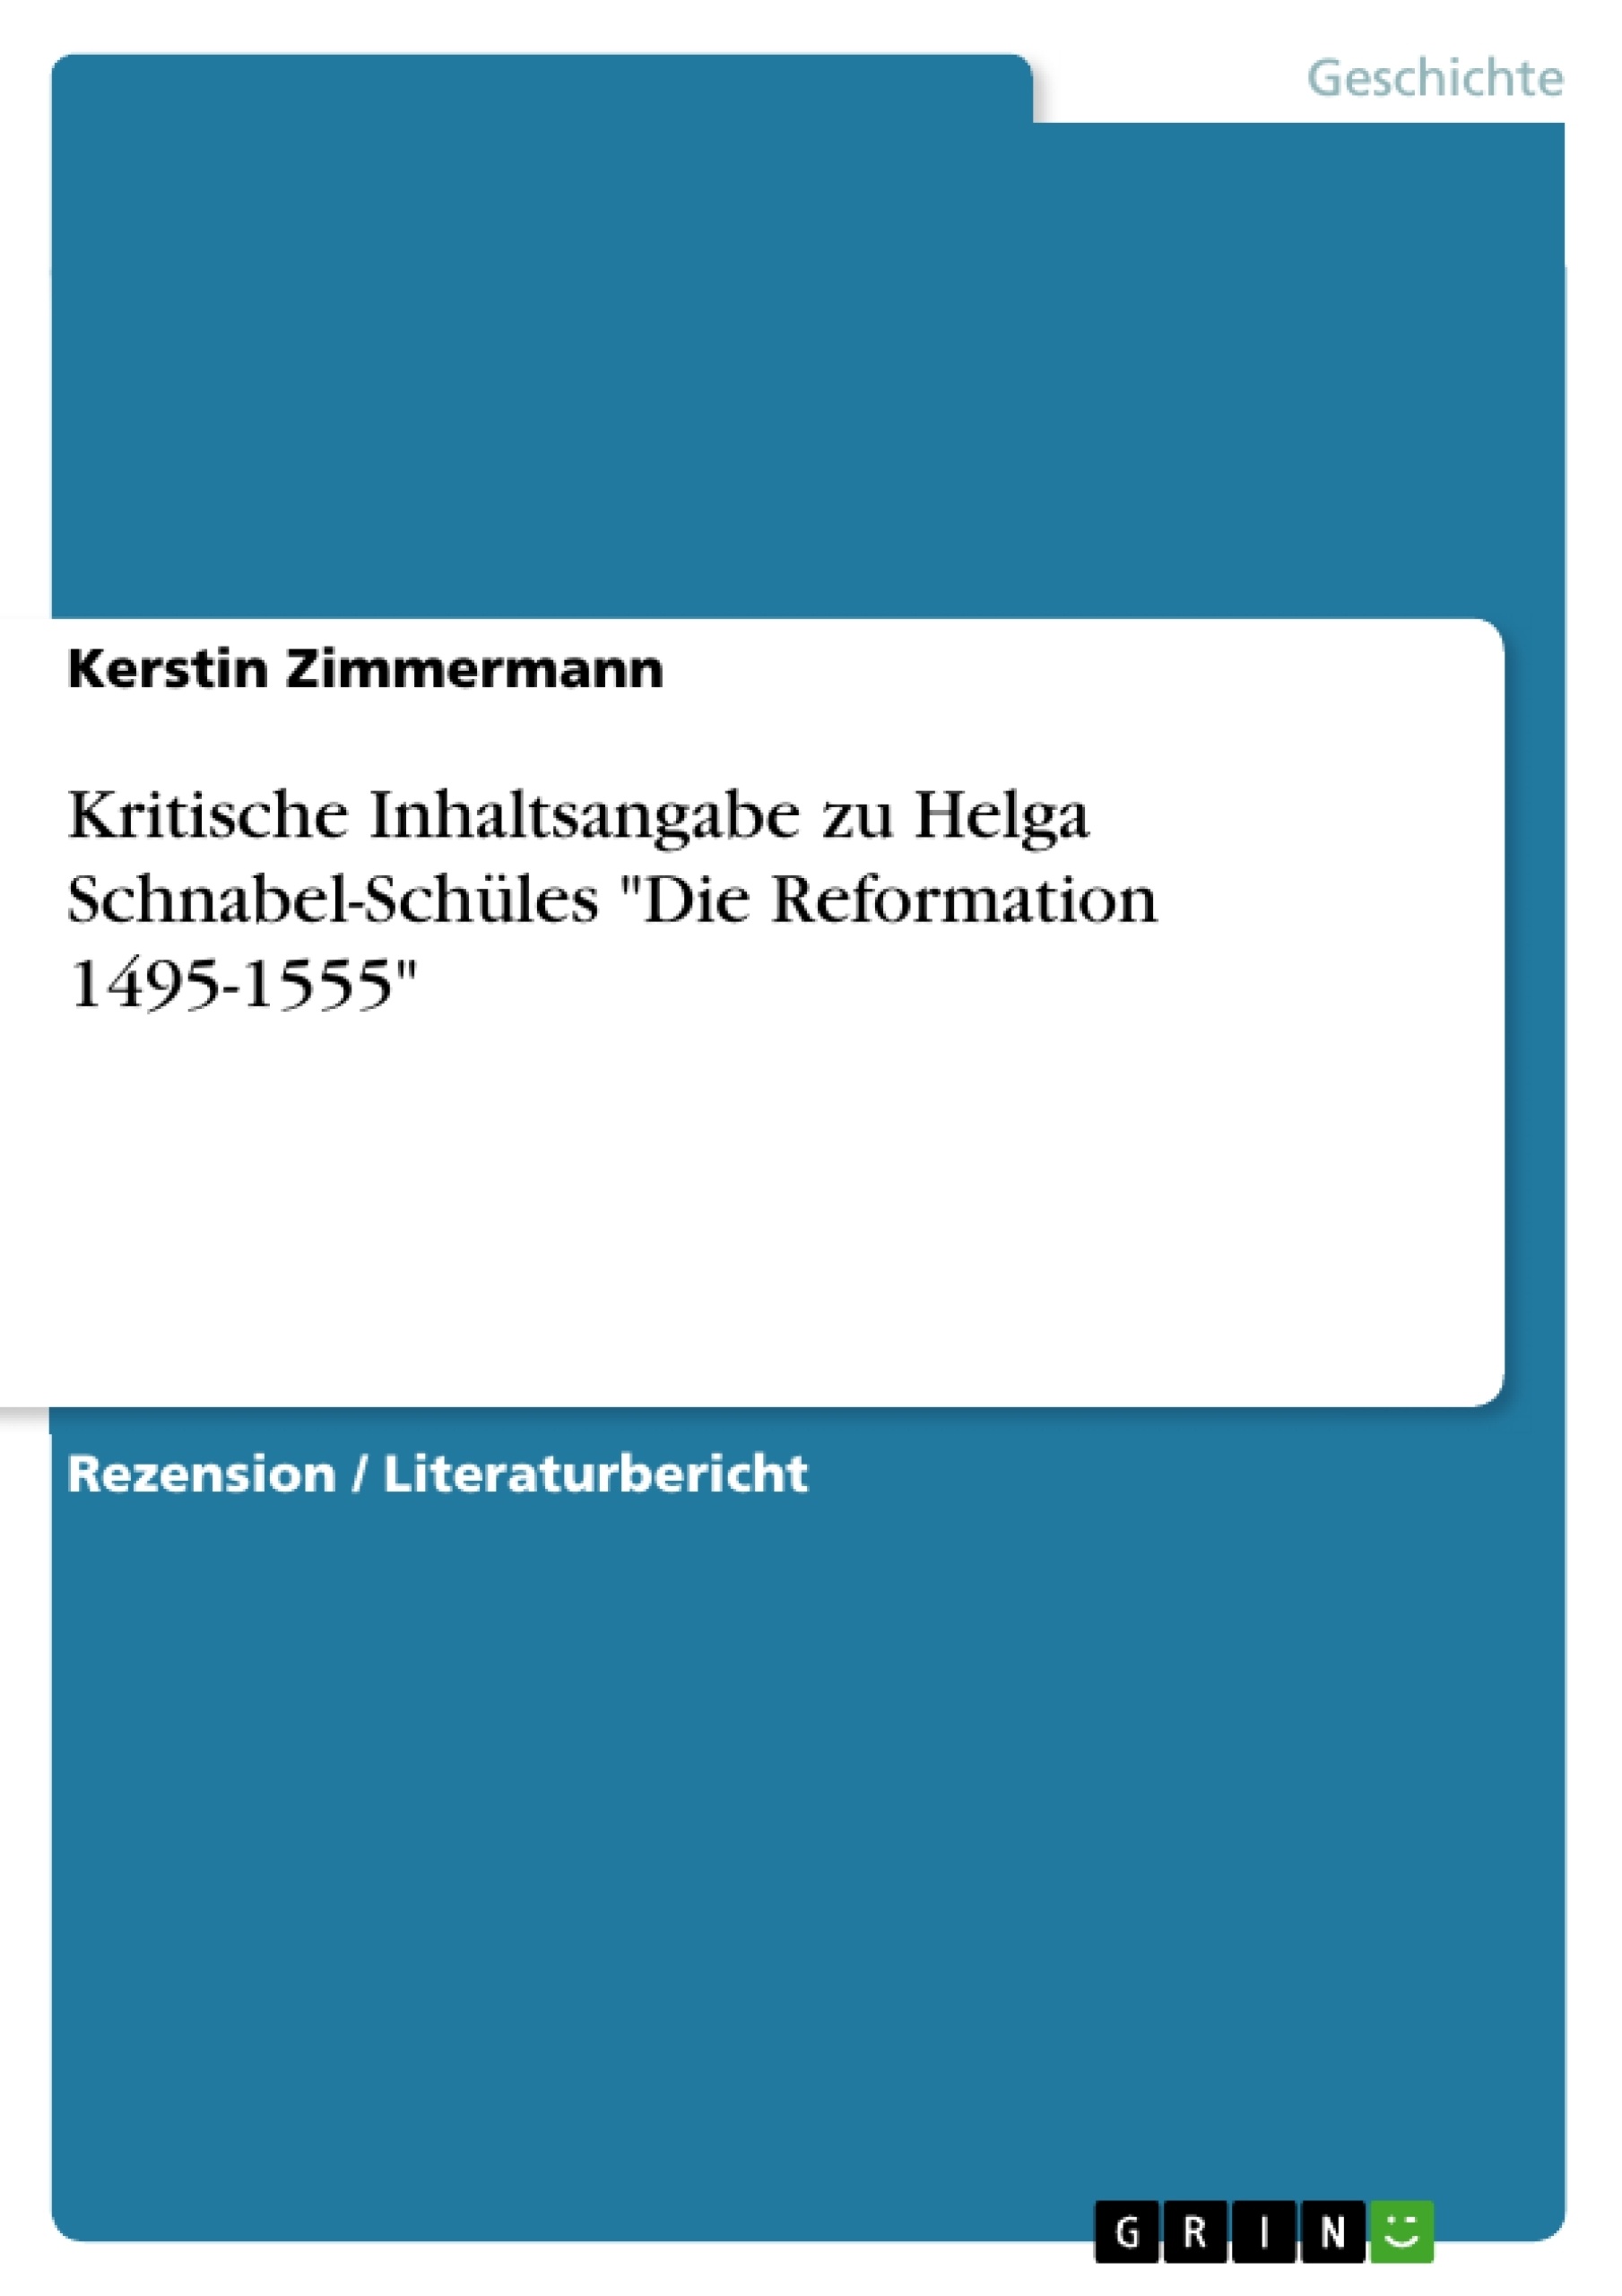 Titre: Kritische Inhaltsangabe zu Helga Schnabel-Schüles "Die Reformation 1495-1555"